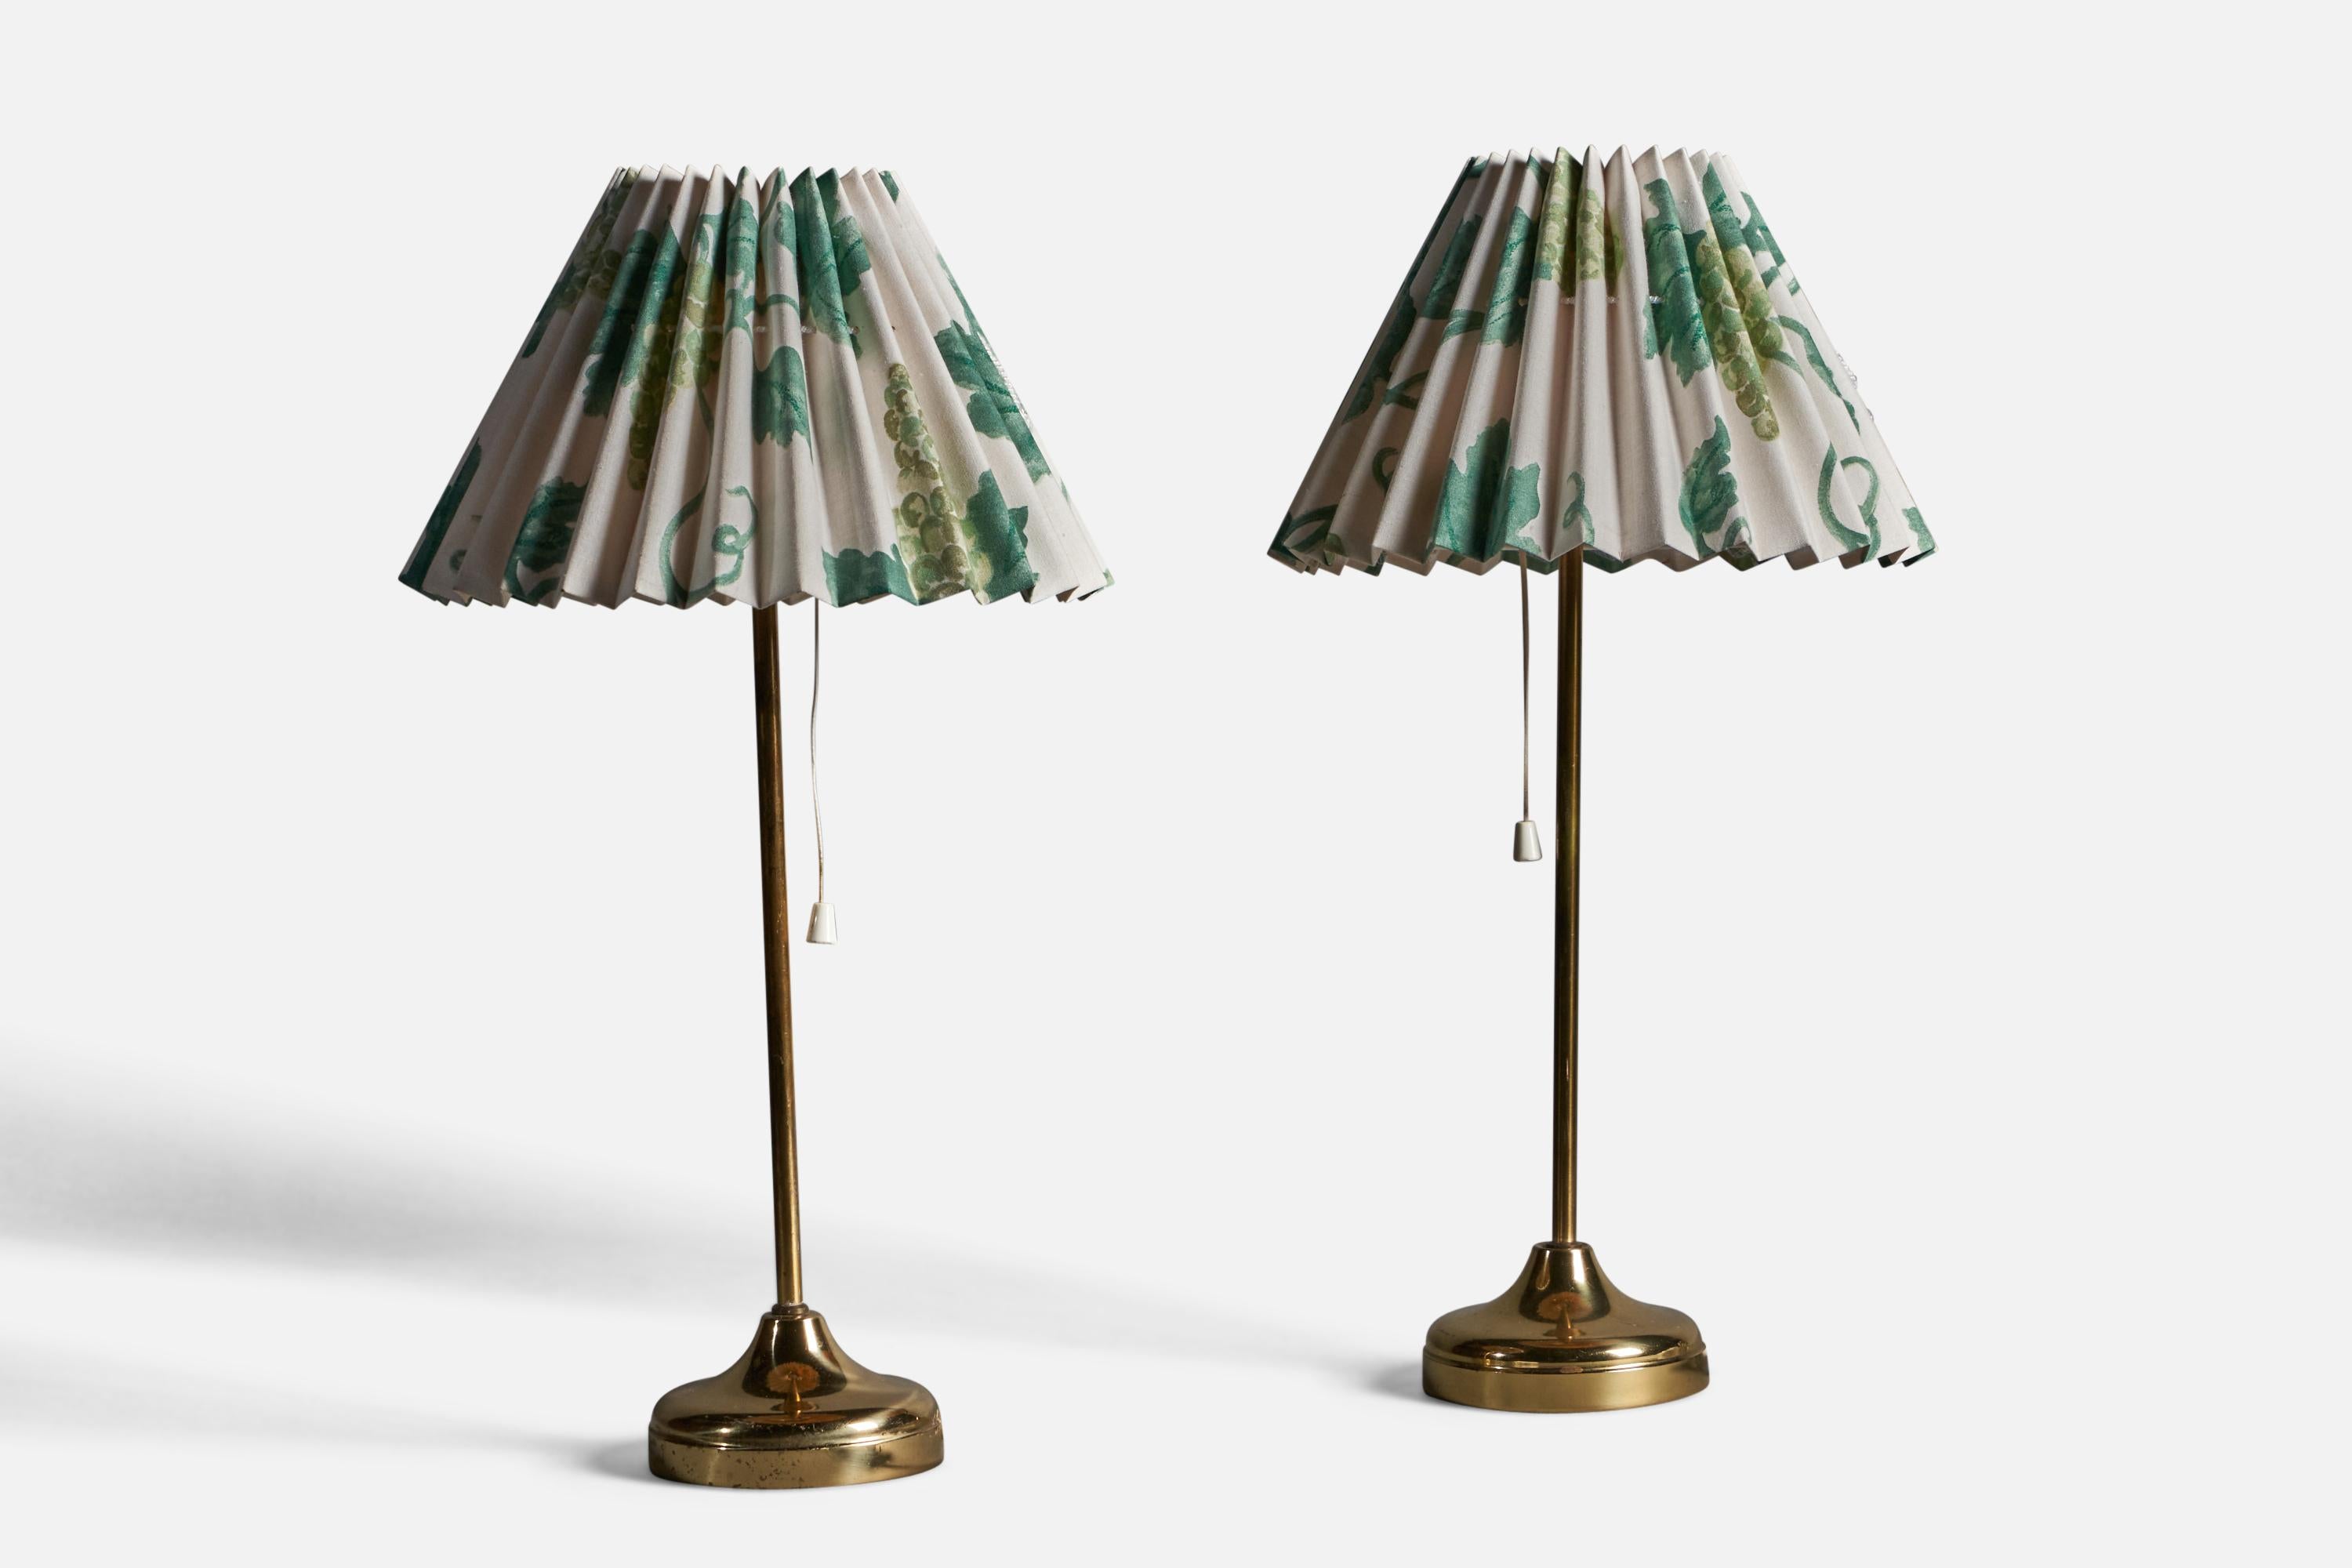 Paire de lampes de table en laiton et tissu imprimé floral, conçues et produites par Nafa, Suède, années 1960.

Dimensions globales (pouces) : 18.75